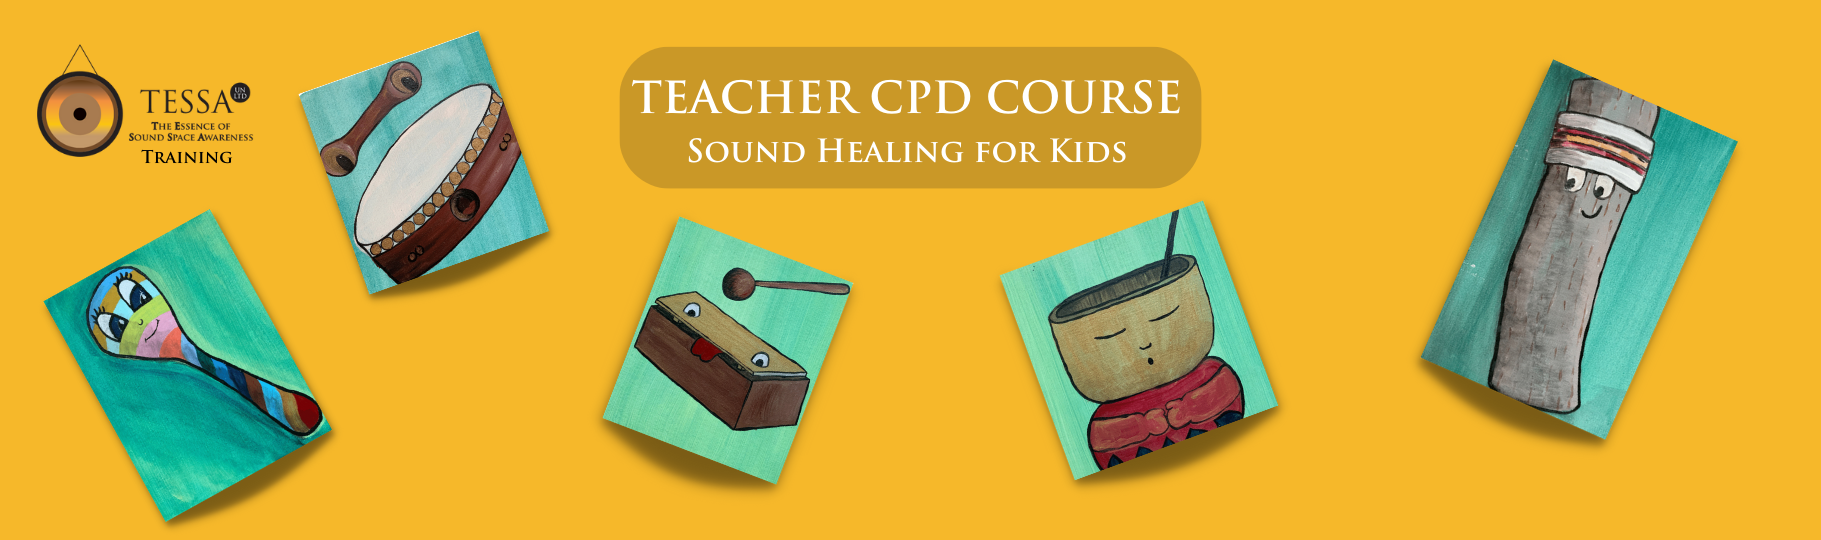 Tessa_Un_Ltd_Sound_Healing_for_Kids_Teacher_CPD_Course